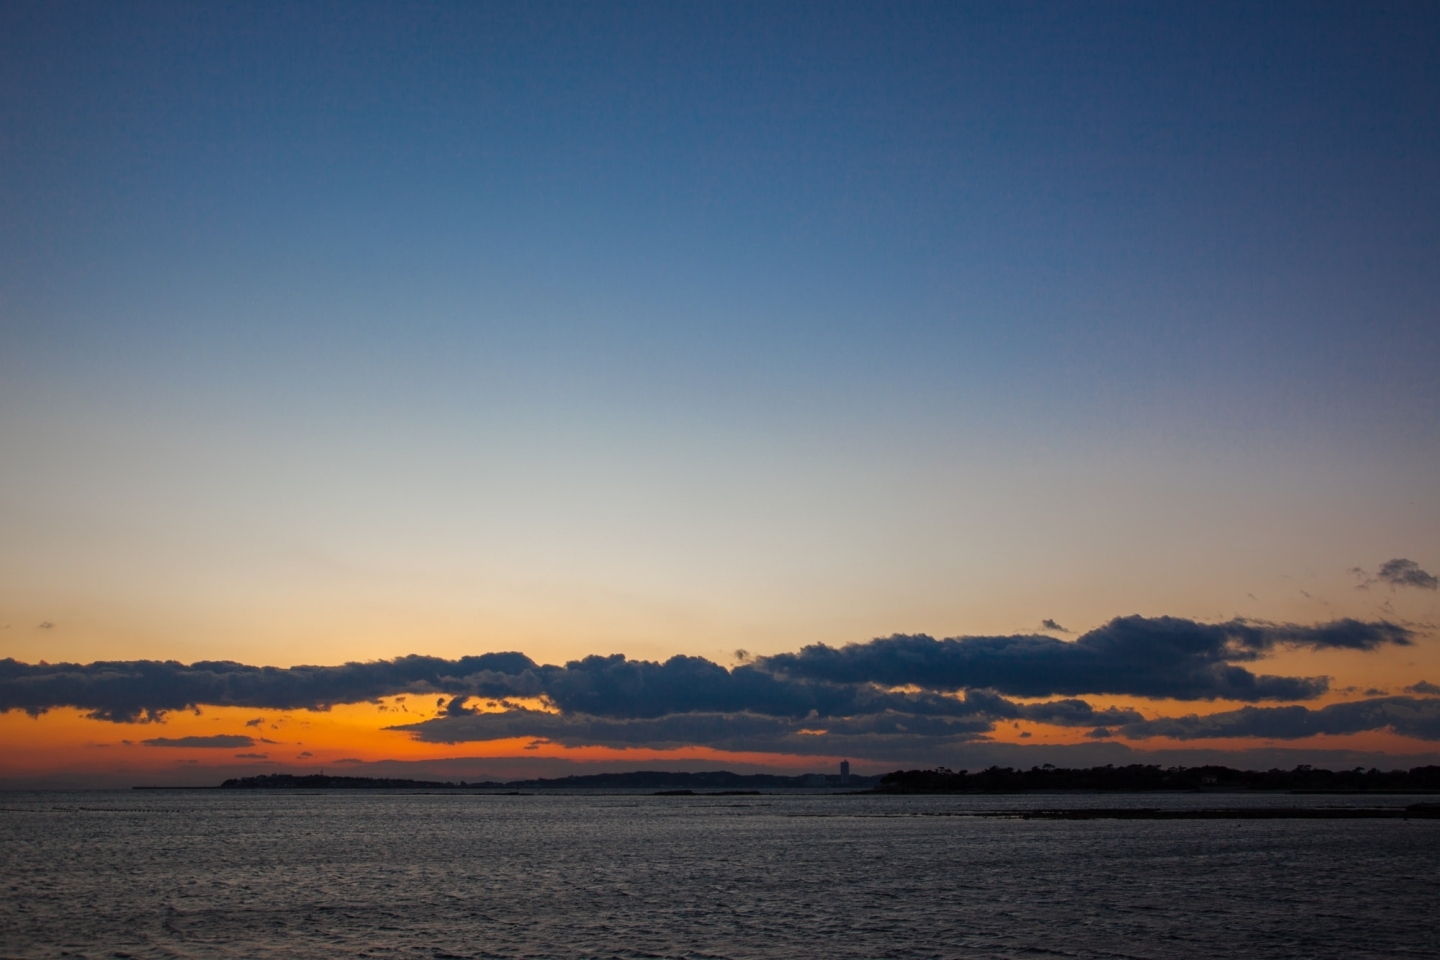 佐久島の夕日は息を呑む美しさです